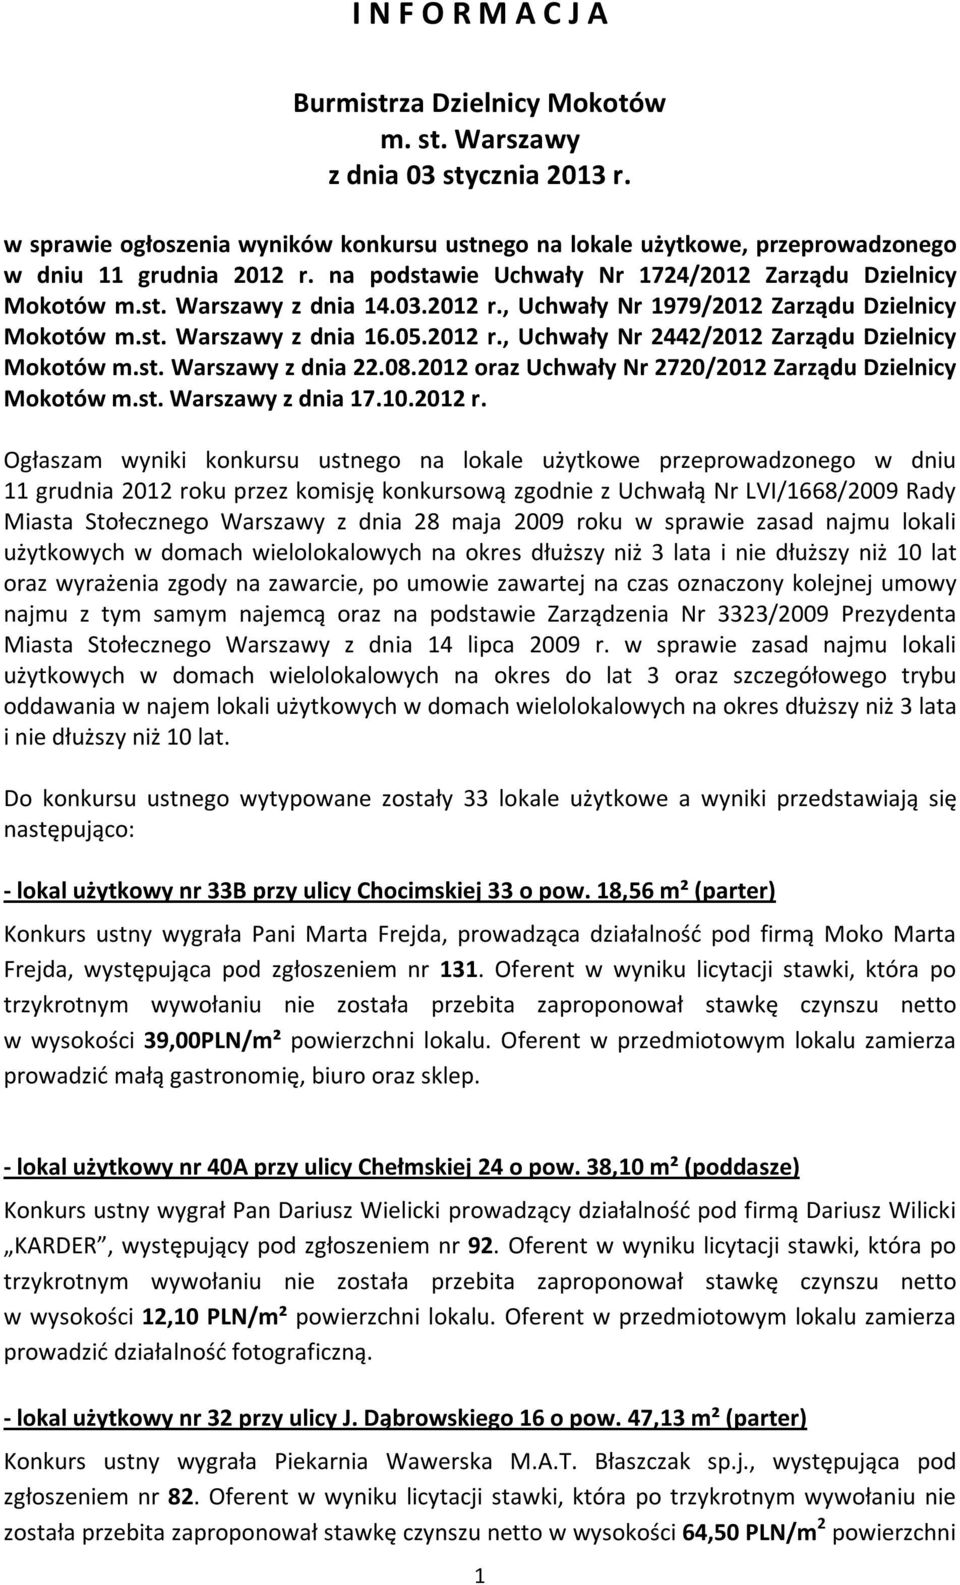 st. Warszawy z dnia 22.08.2012 oraz Uchwały Nr 2720/2012 Zarządu Dzielnicy Mokotów m.st. Warszawy z dnia 17.10.2012 r.